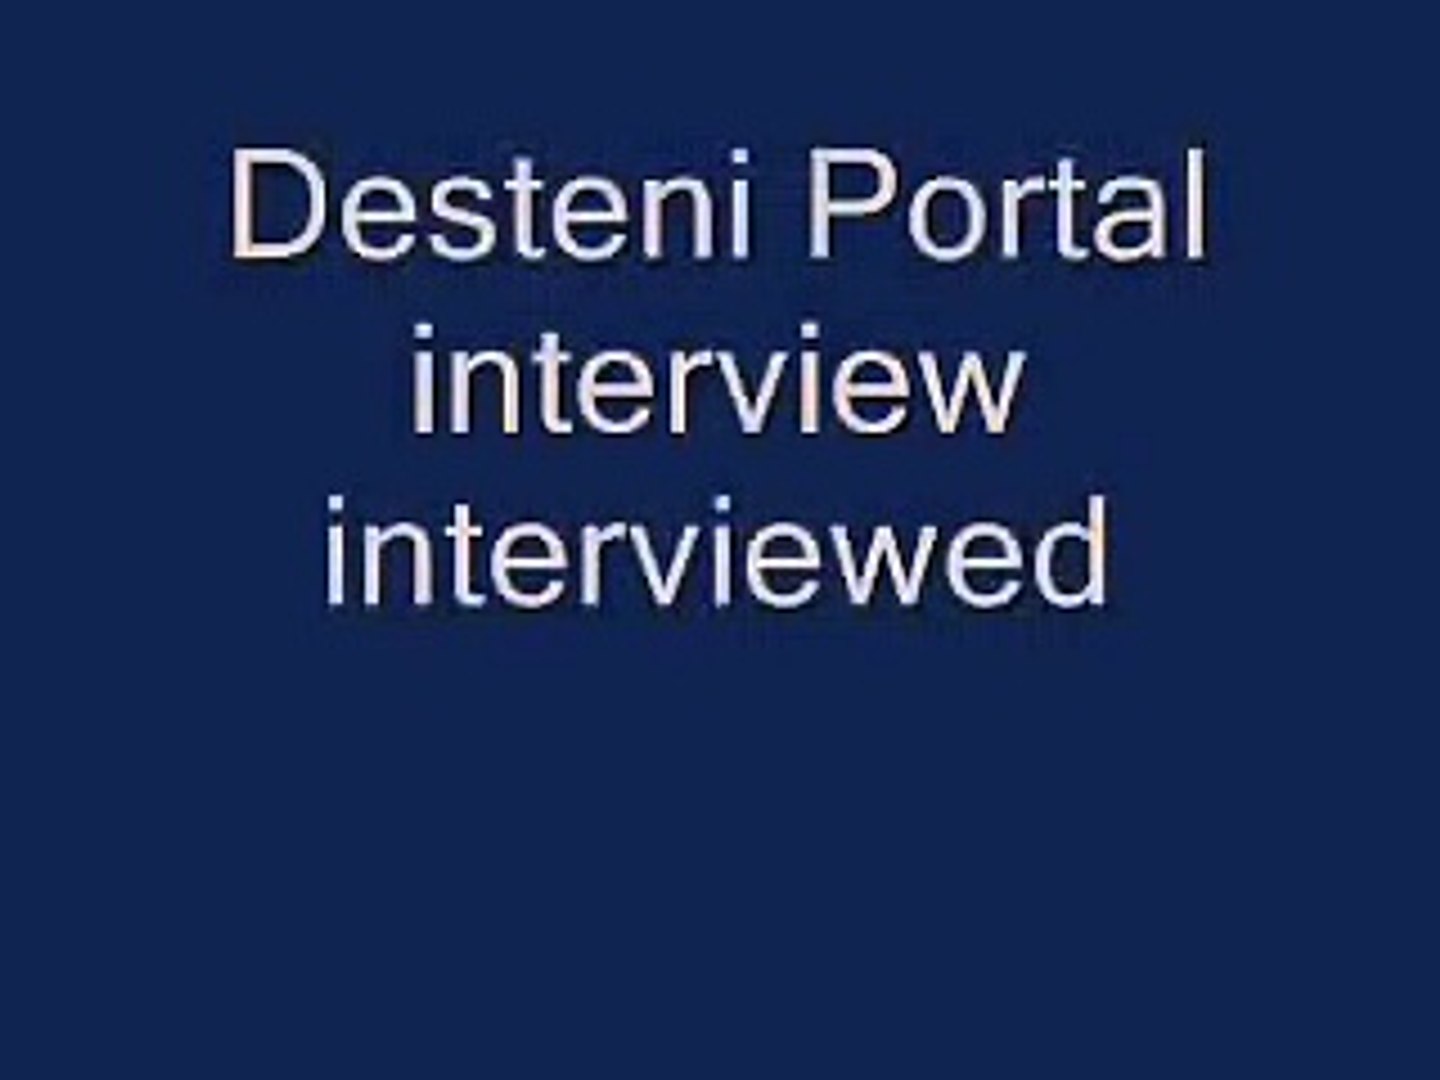 Desteni Portal interview interviewed [Mirrored]